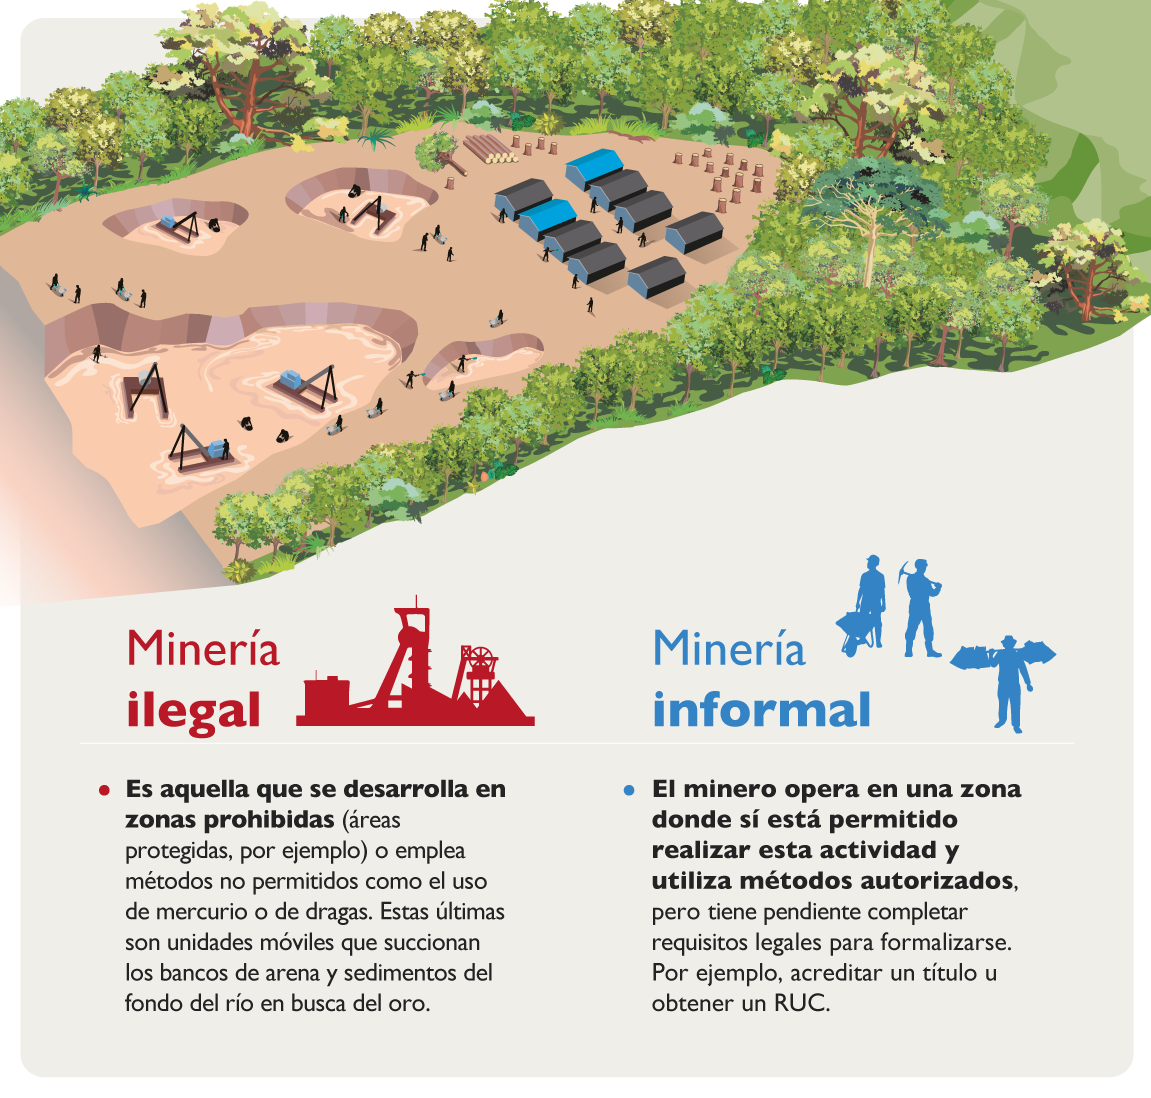 Diferencias entre minería ilegal y minería informal